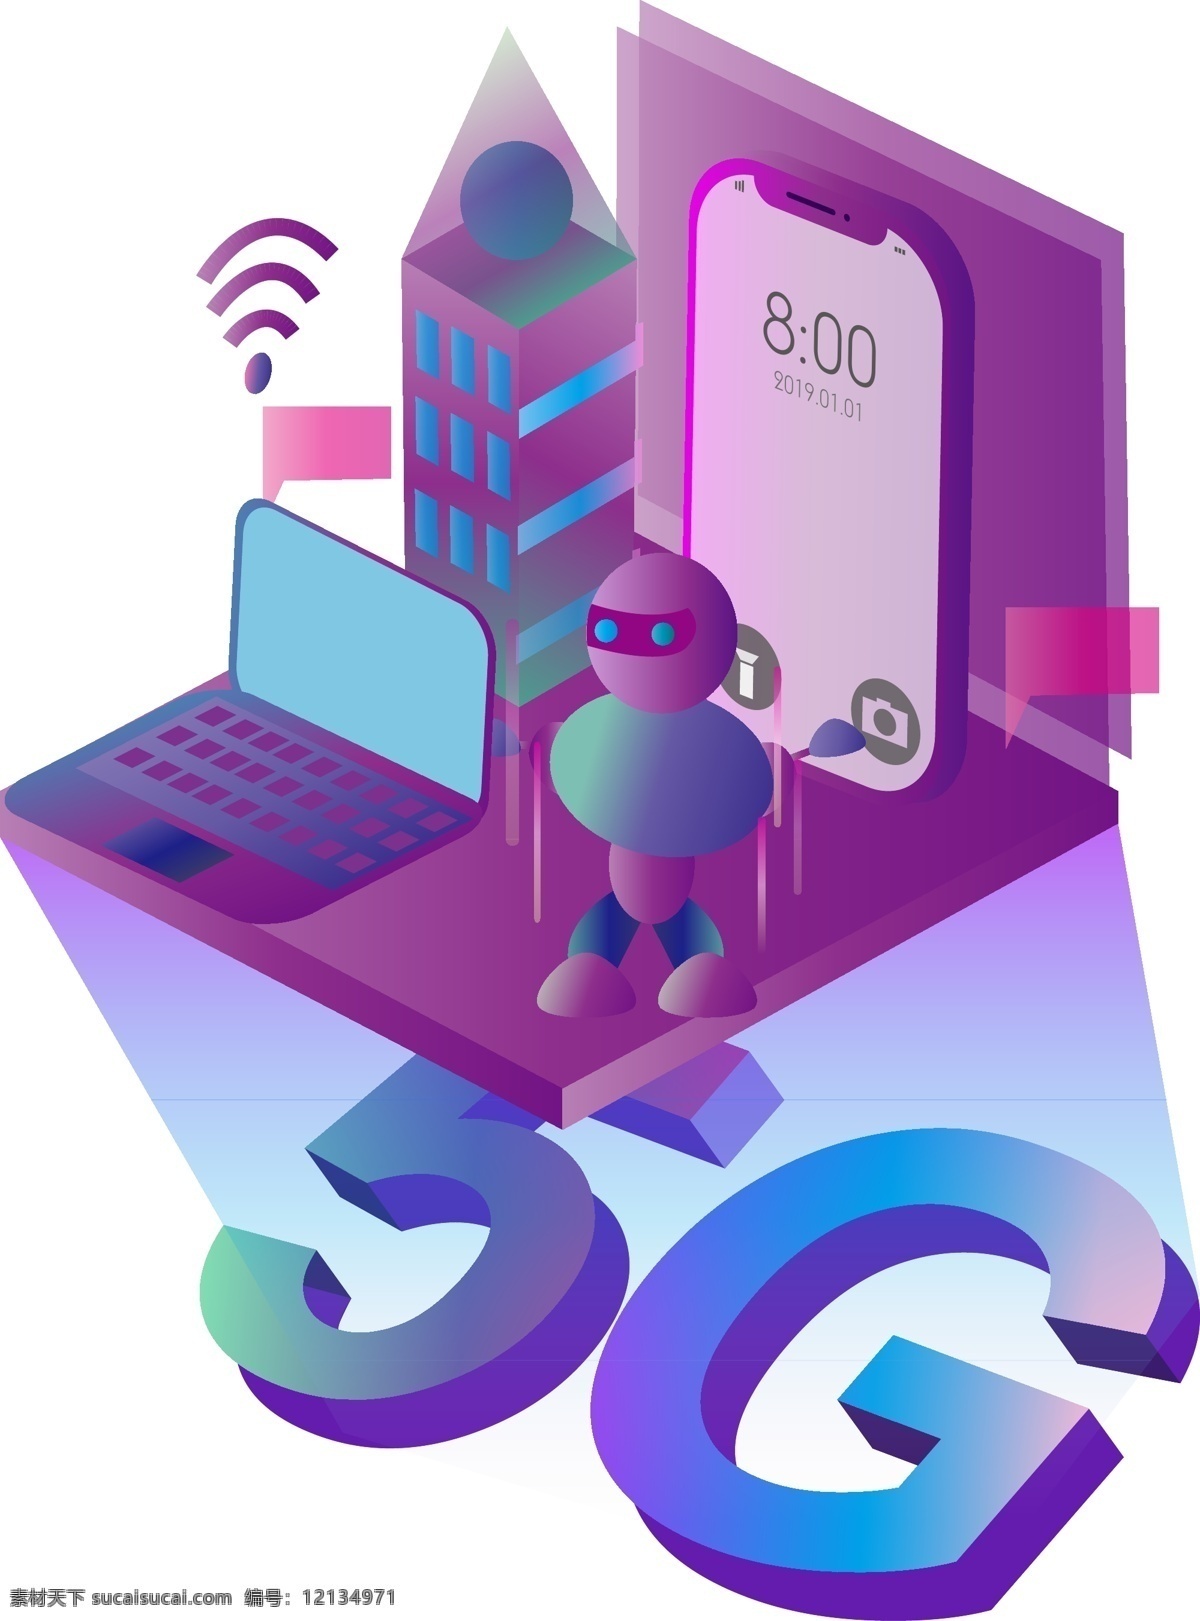 d5g 无线网络 时代 2.5d 5g 无线 通信 通讯 手机 商务办公 机器人 电脑 连接 紫色 科技 未来 ui 扁平